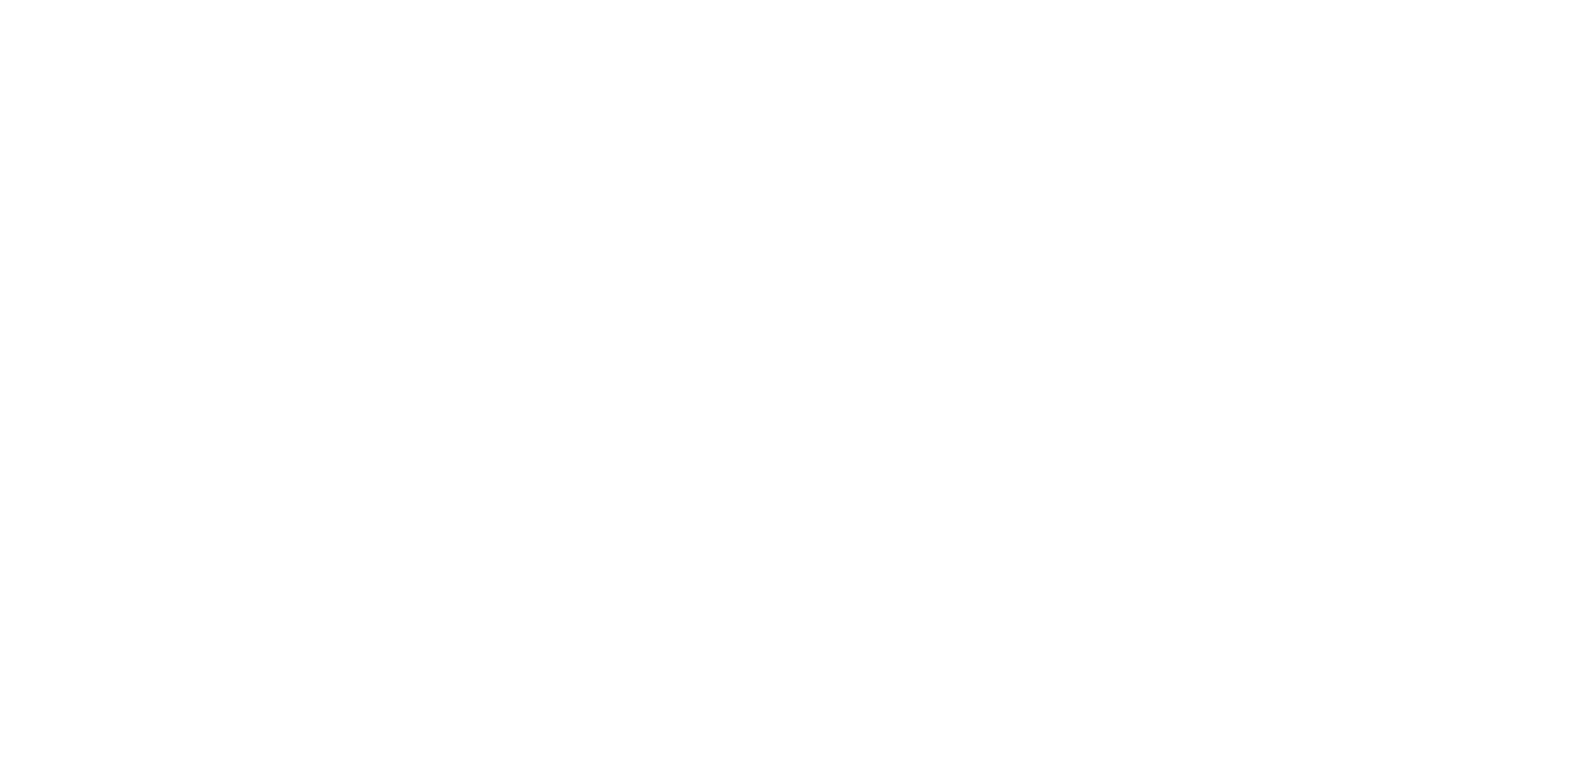 Fortress REIT logo grand pour les fonds sombres (PNG transparent)